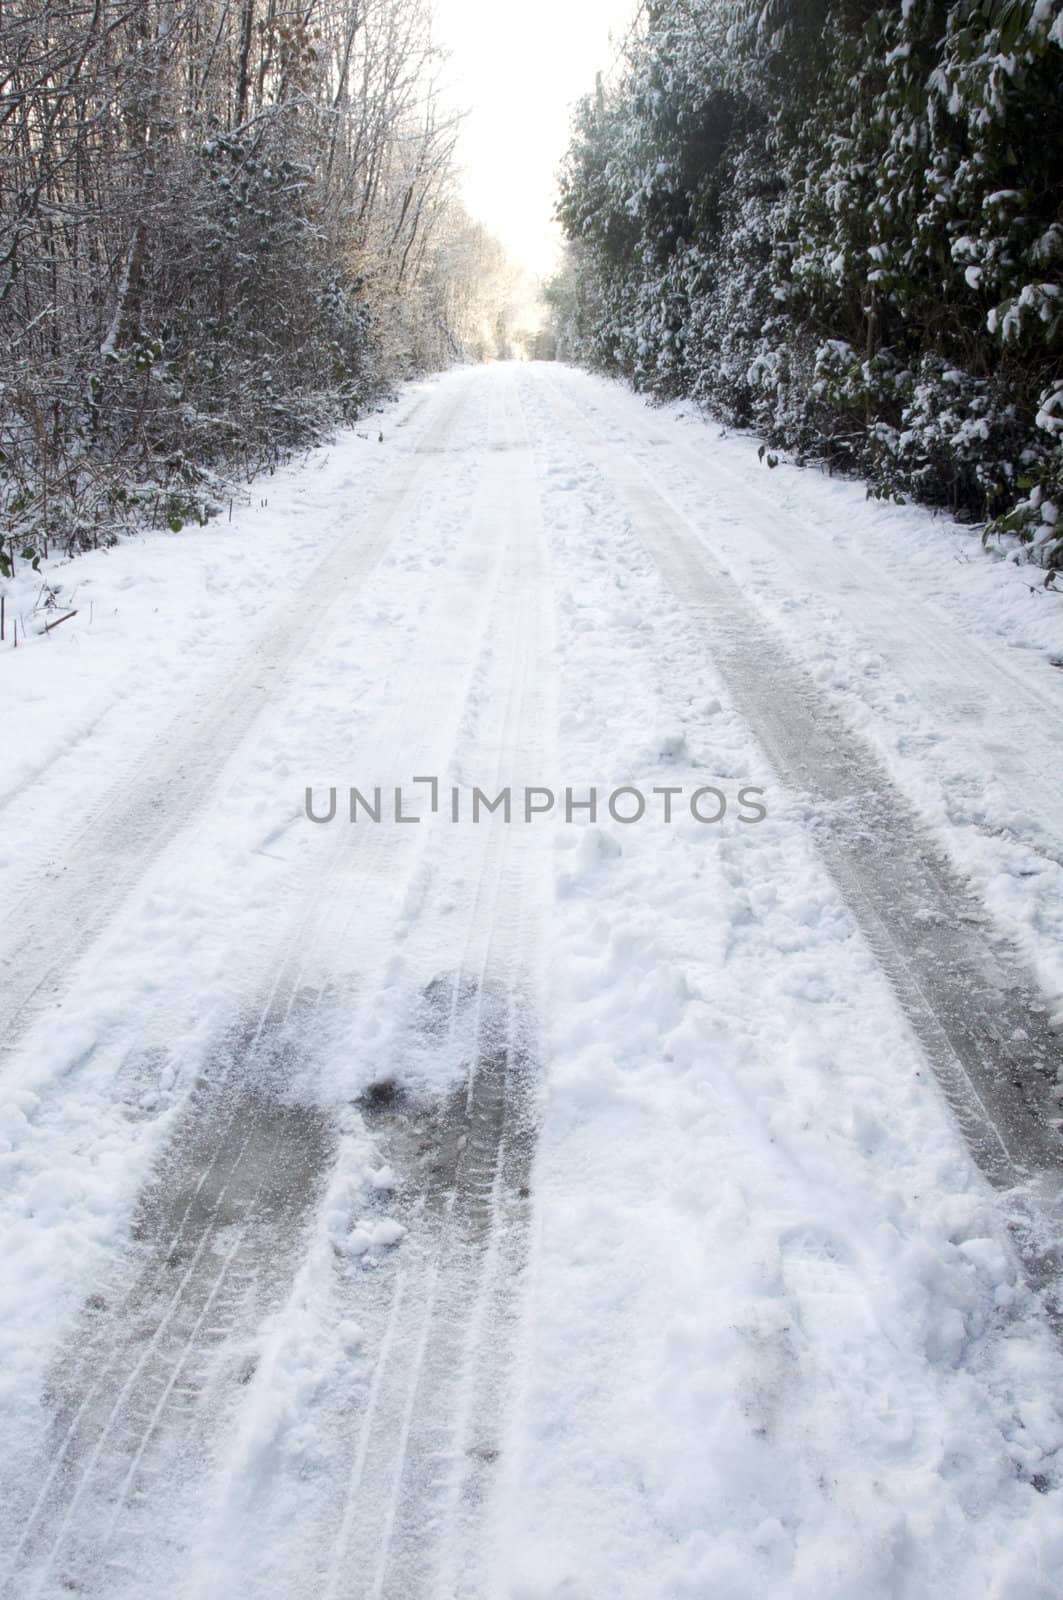 Snowy lane by mbtaichi